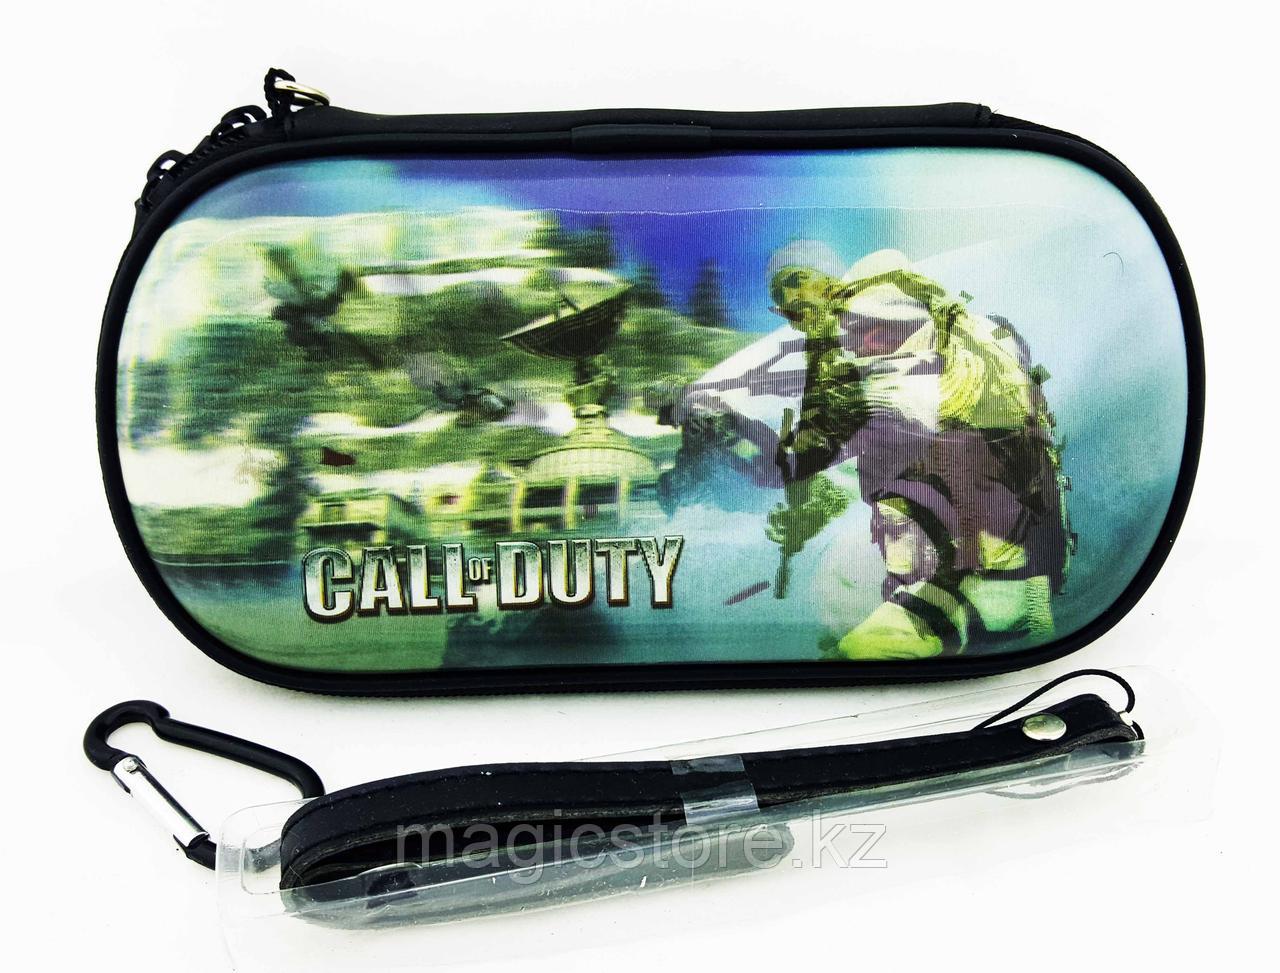 Чехол на молнии с 3D картинкой PSP 1000/2000/3000 3in1 3D picture, Call of Duty